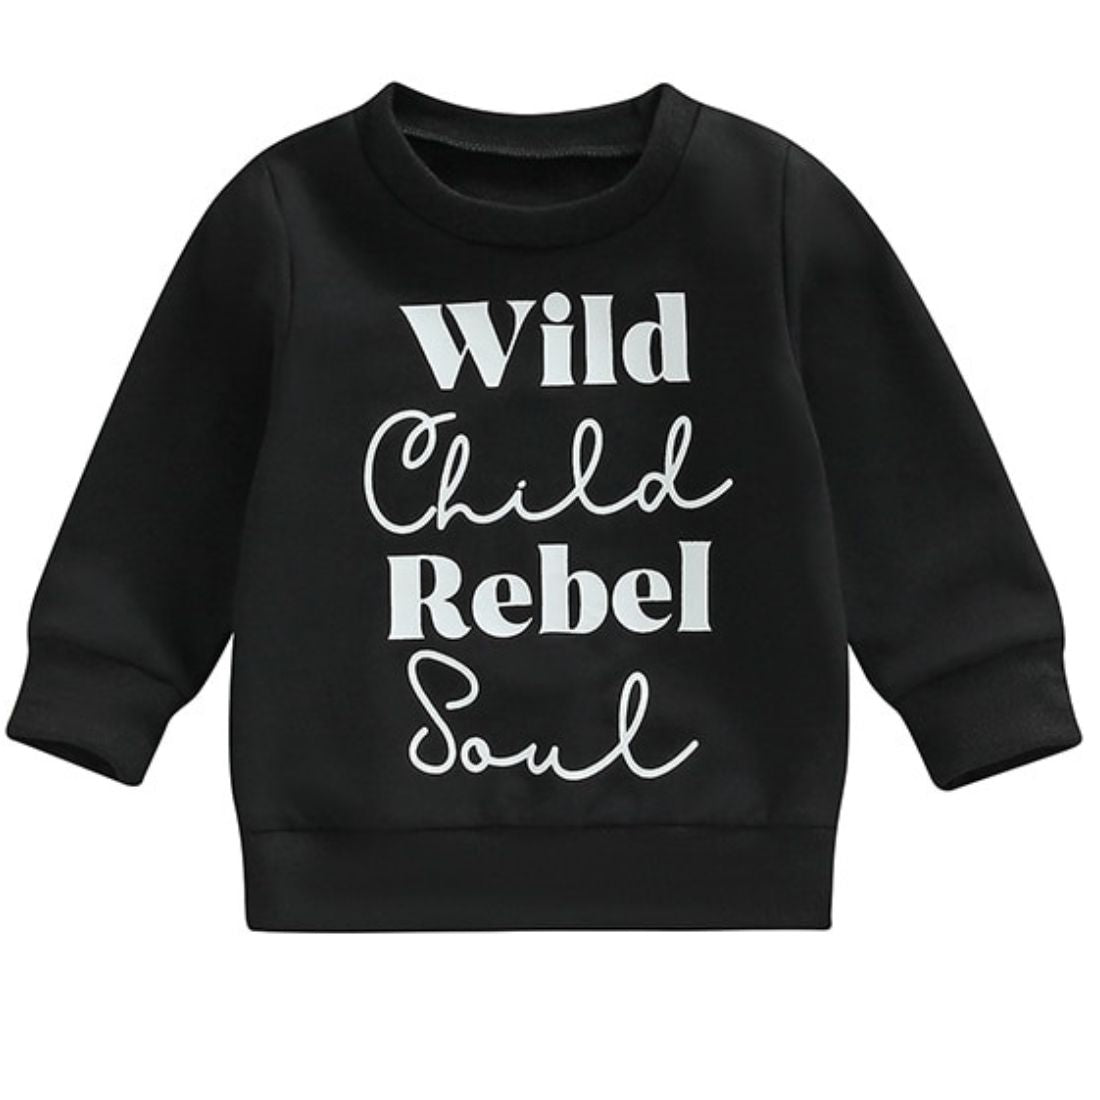 Wild Child Rebel Soul Toddler Sweatshirt